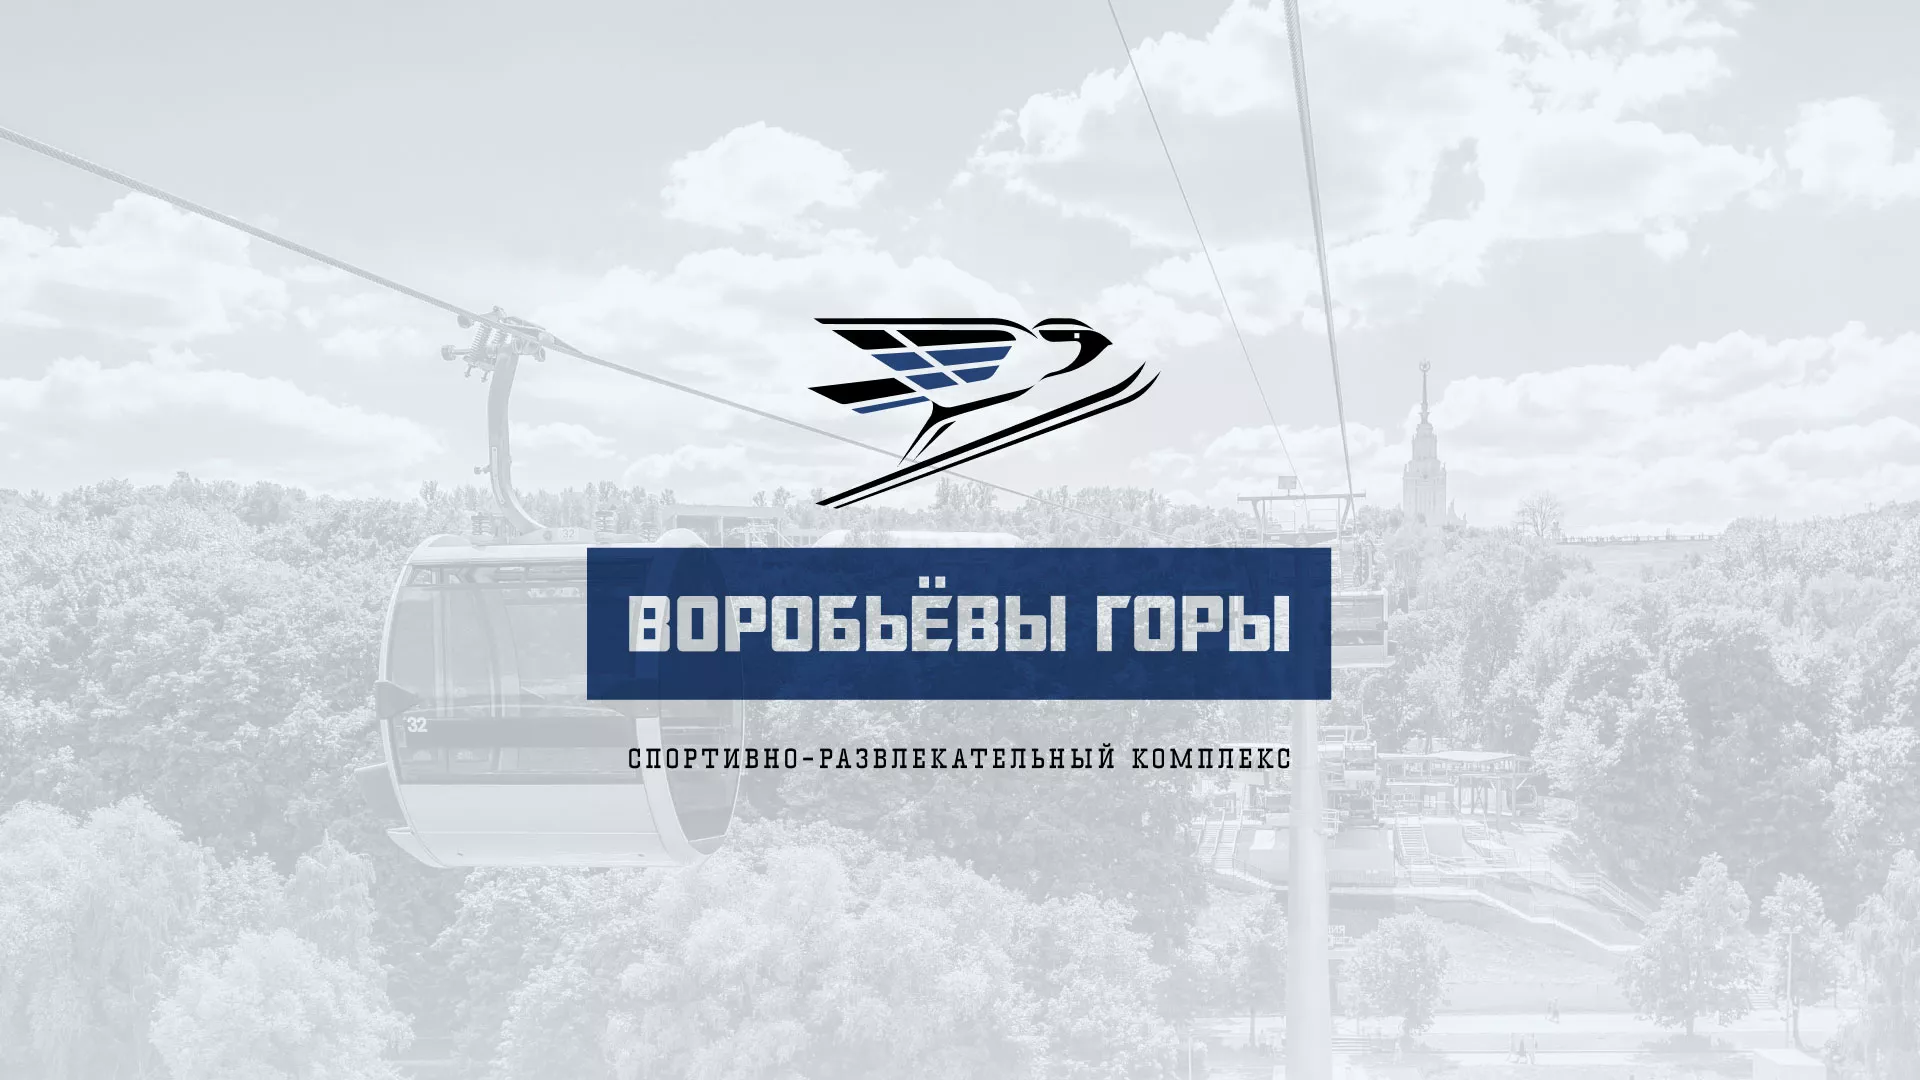 Разработка сайта в Чехове для спортивно-развлекательного комплекса «Воробьёвы горы»